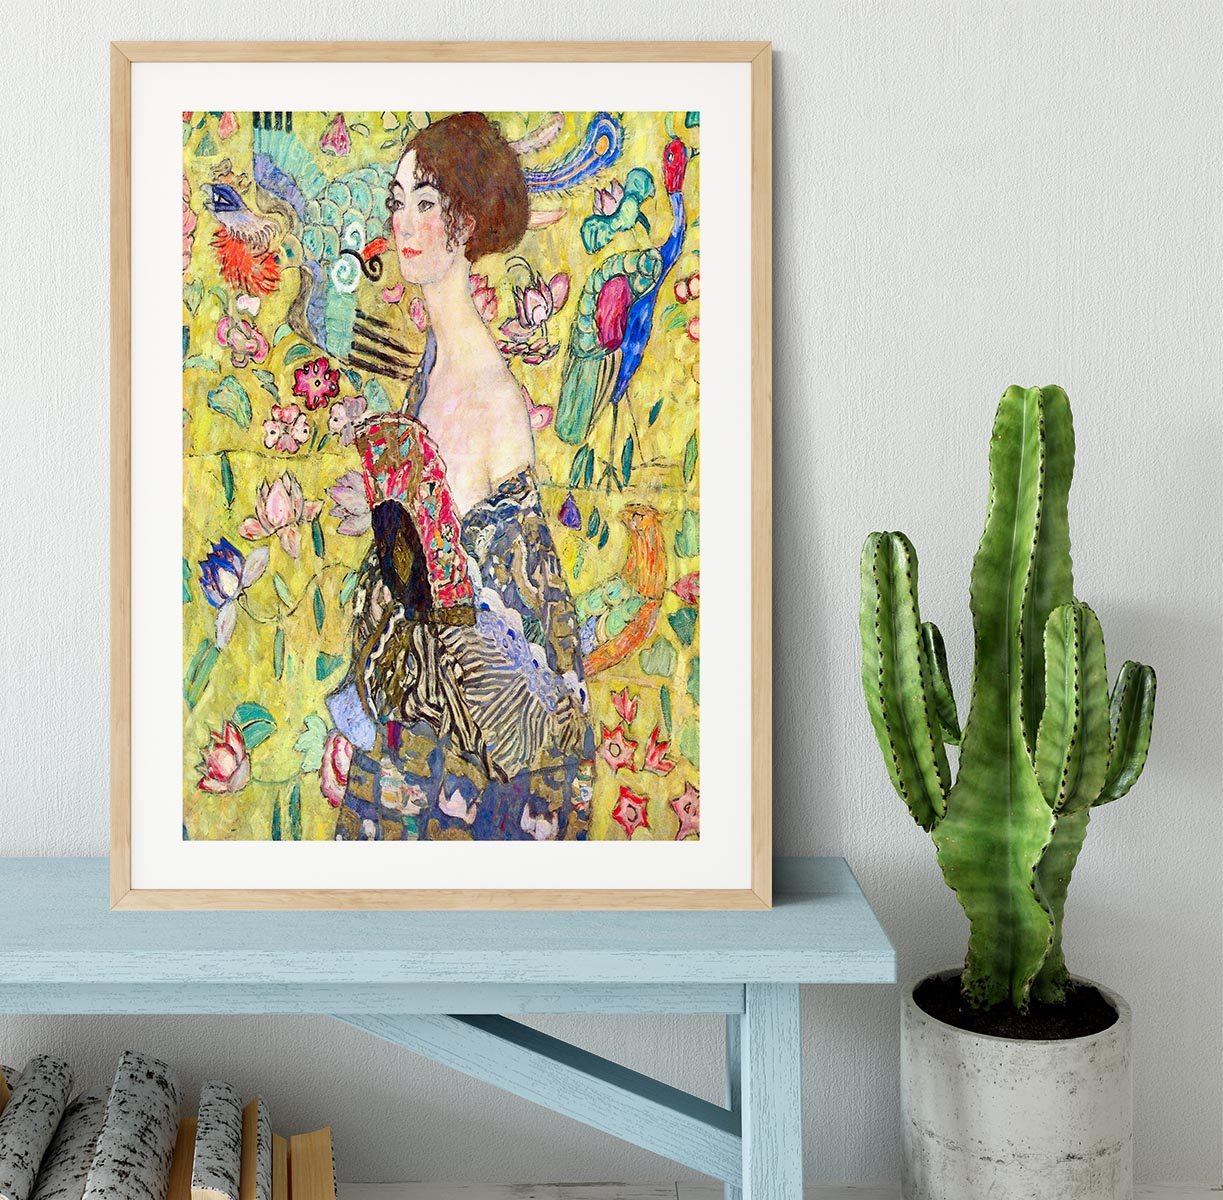 Lady with fan by Klimt Framed Print - Canvas Art Rocks - 3